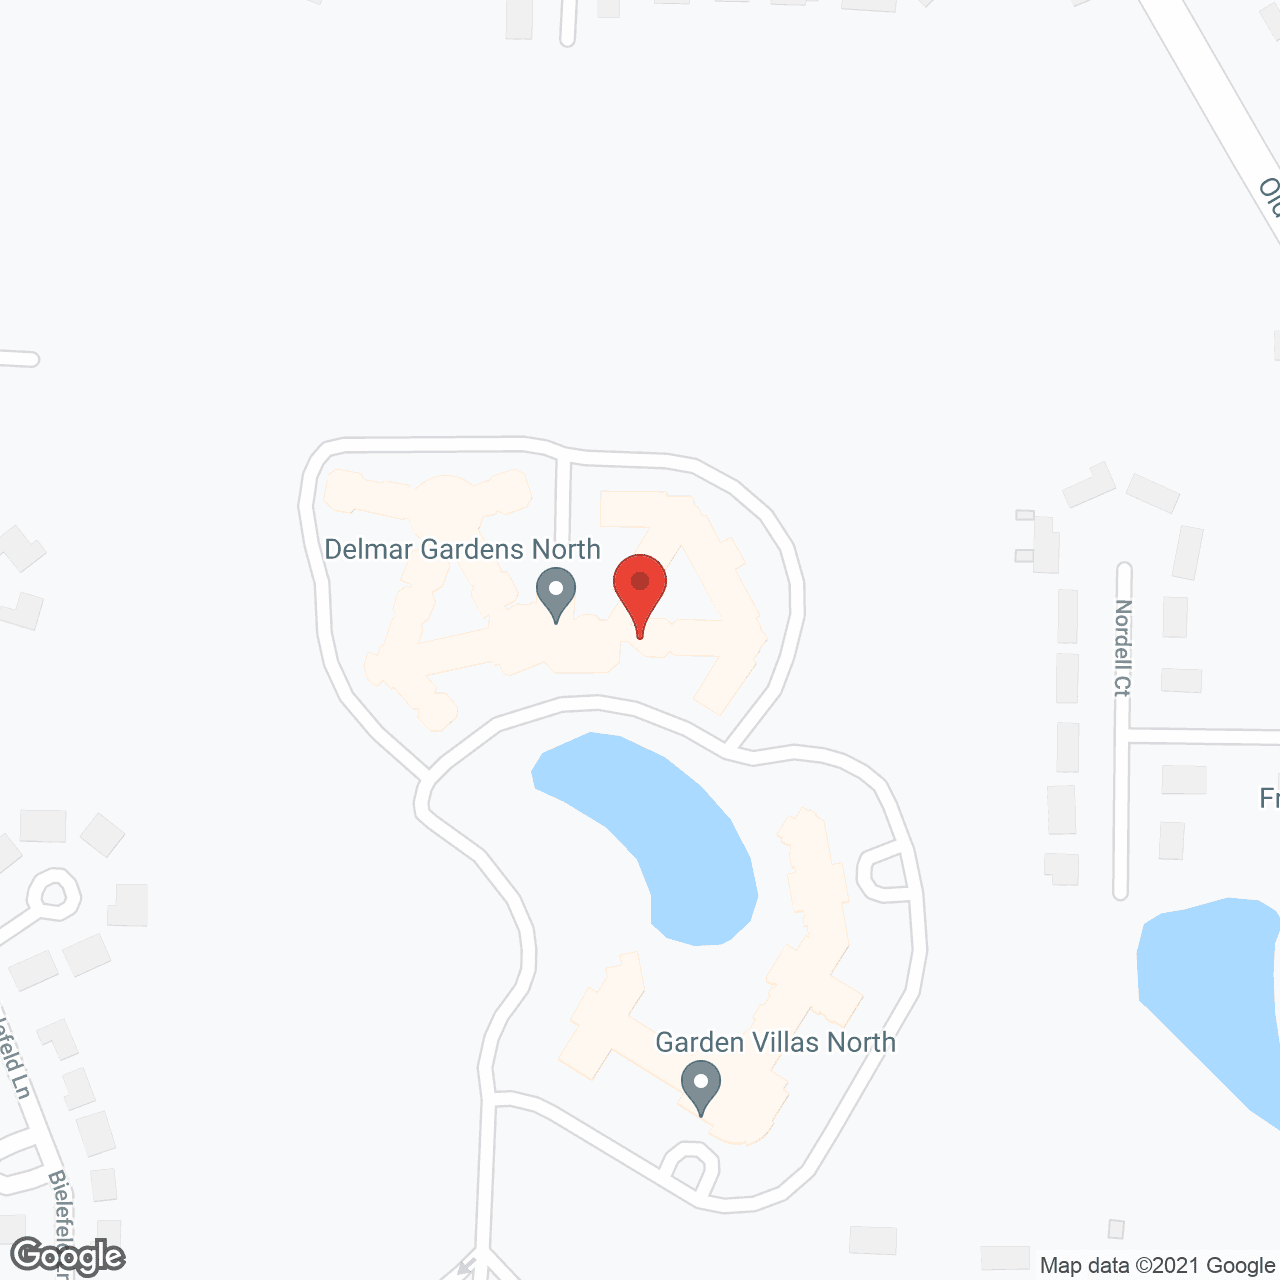 Delmar Gardens North in google map